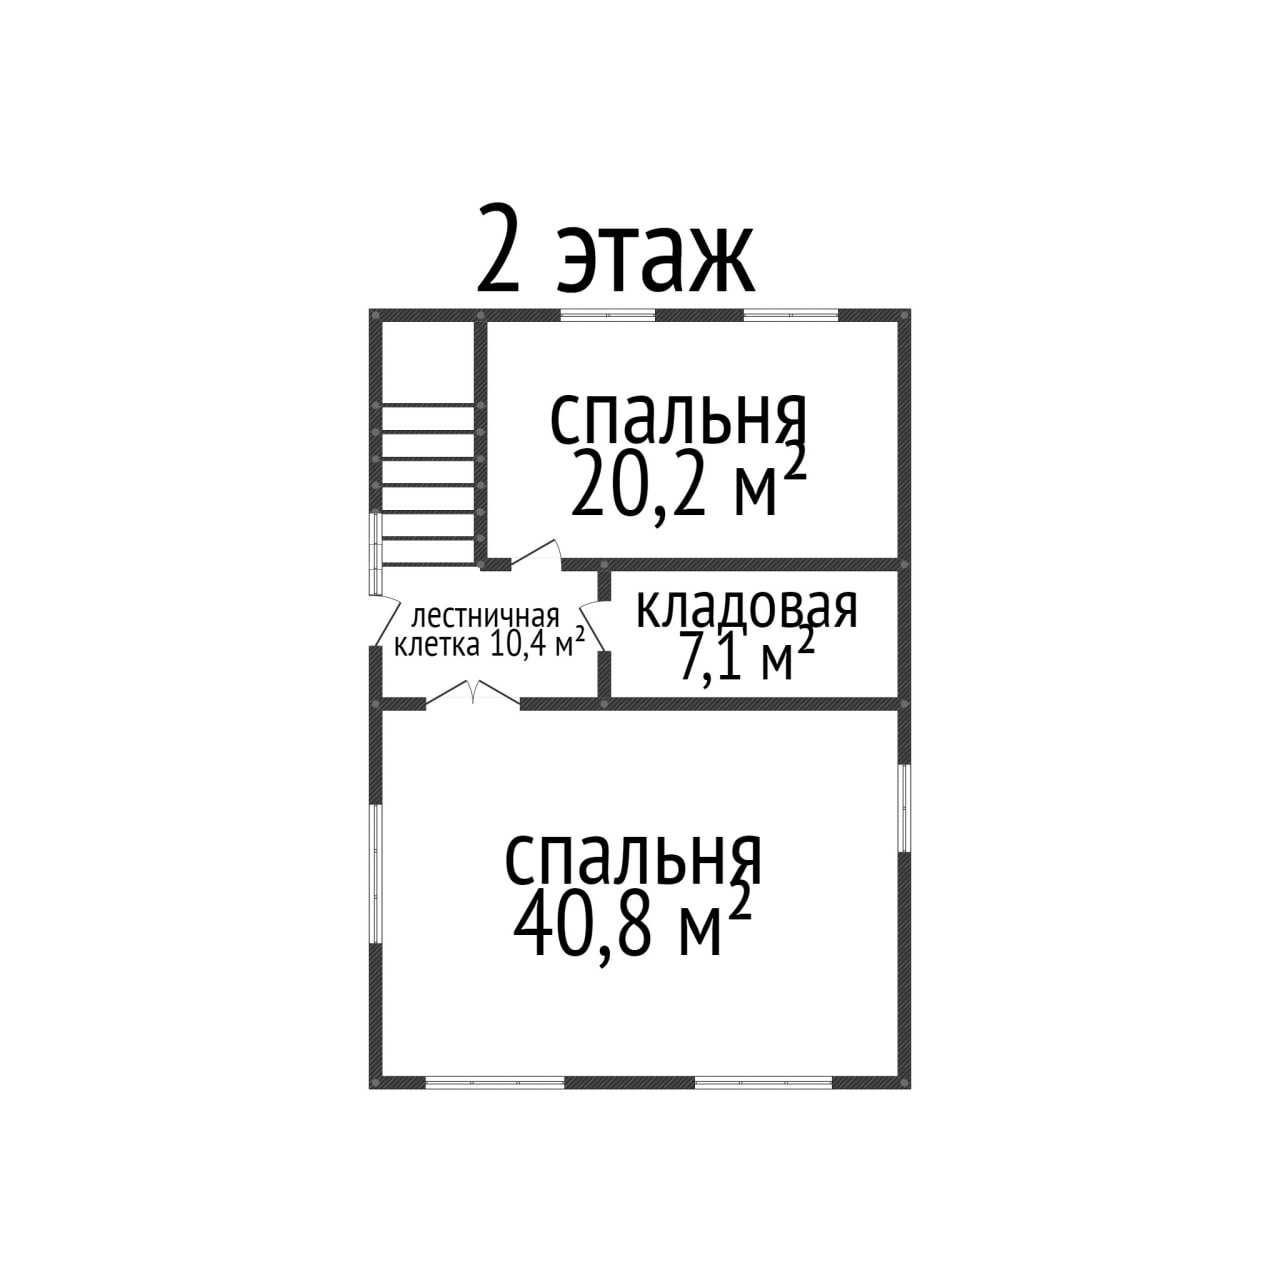 ПРОДАМ 2-х этажный КОТТЕДЖ, 23 мкр